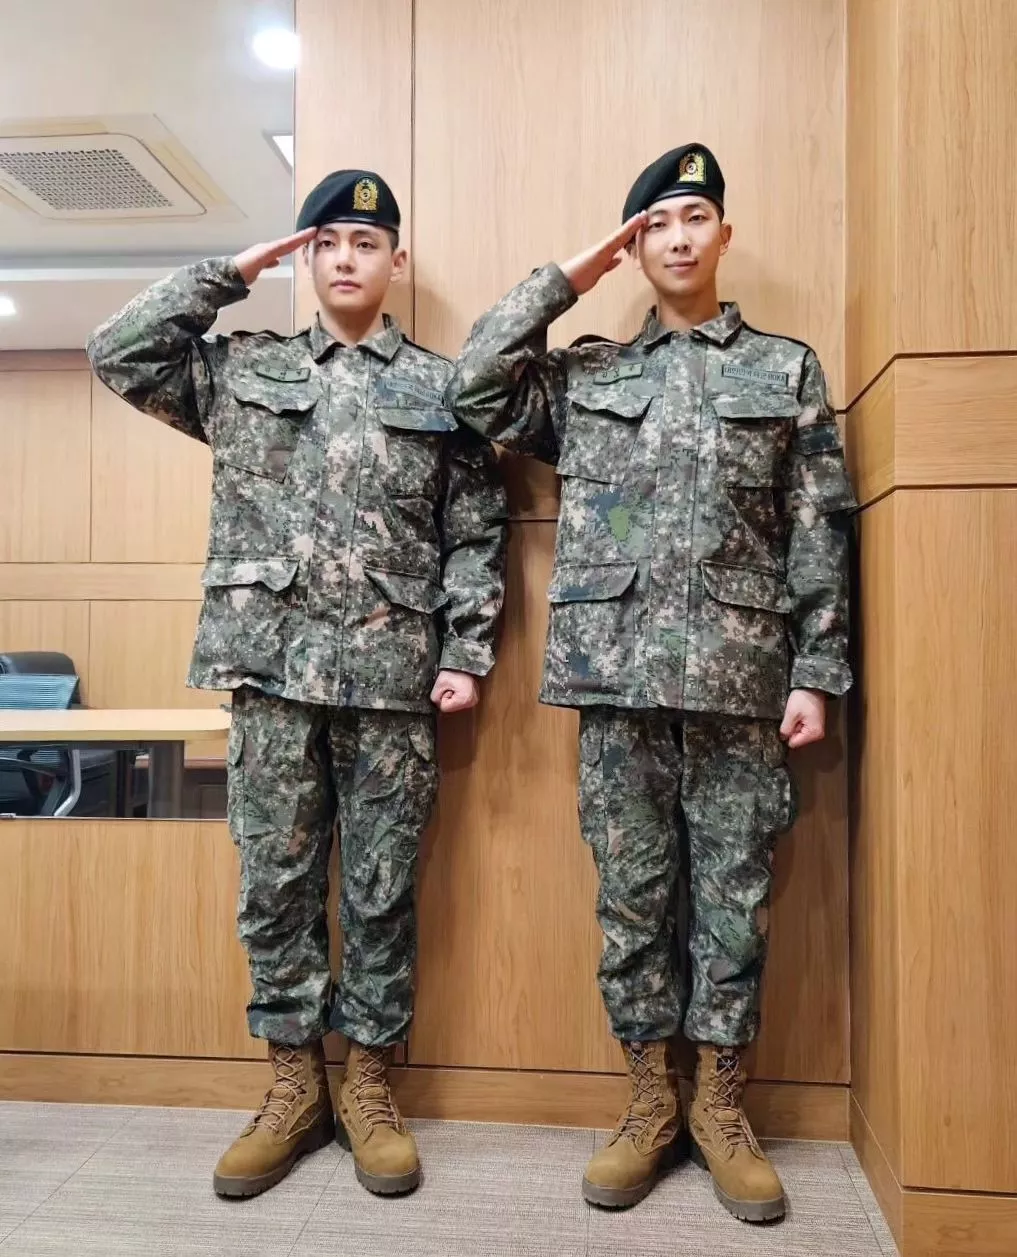 RM и Ви из BTS выглядят потрясающе на последнем обновлении из армии